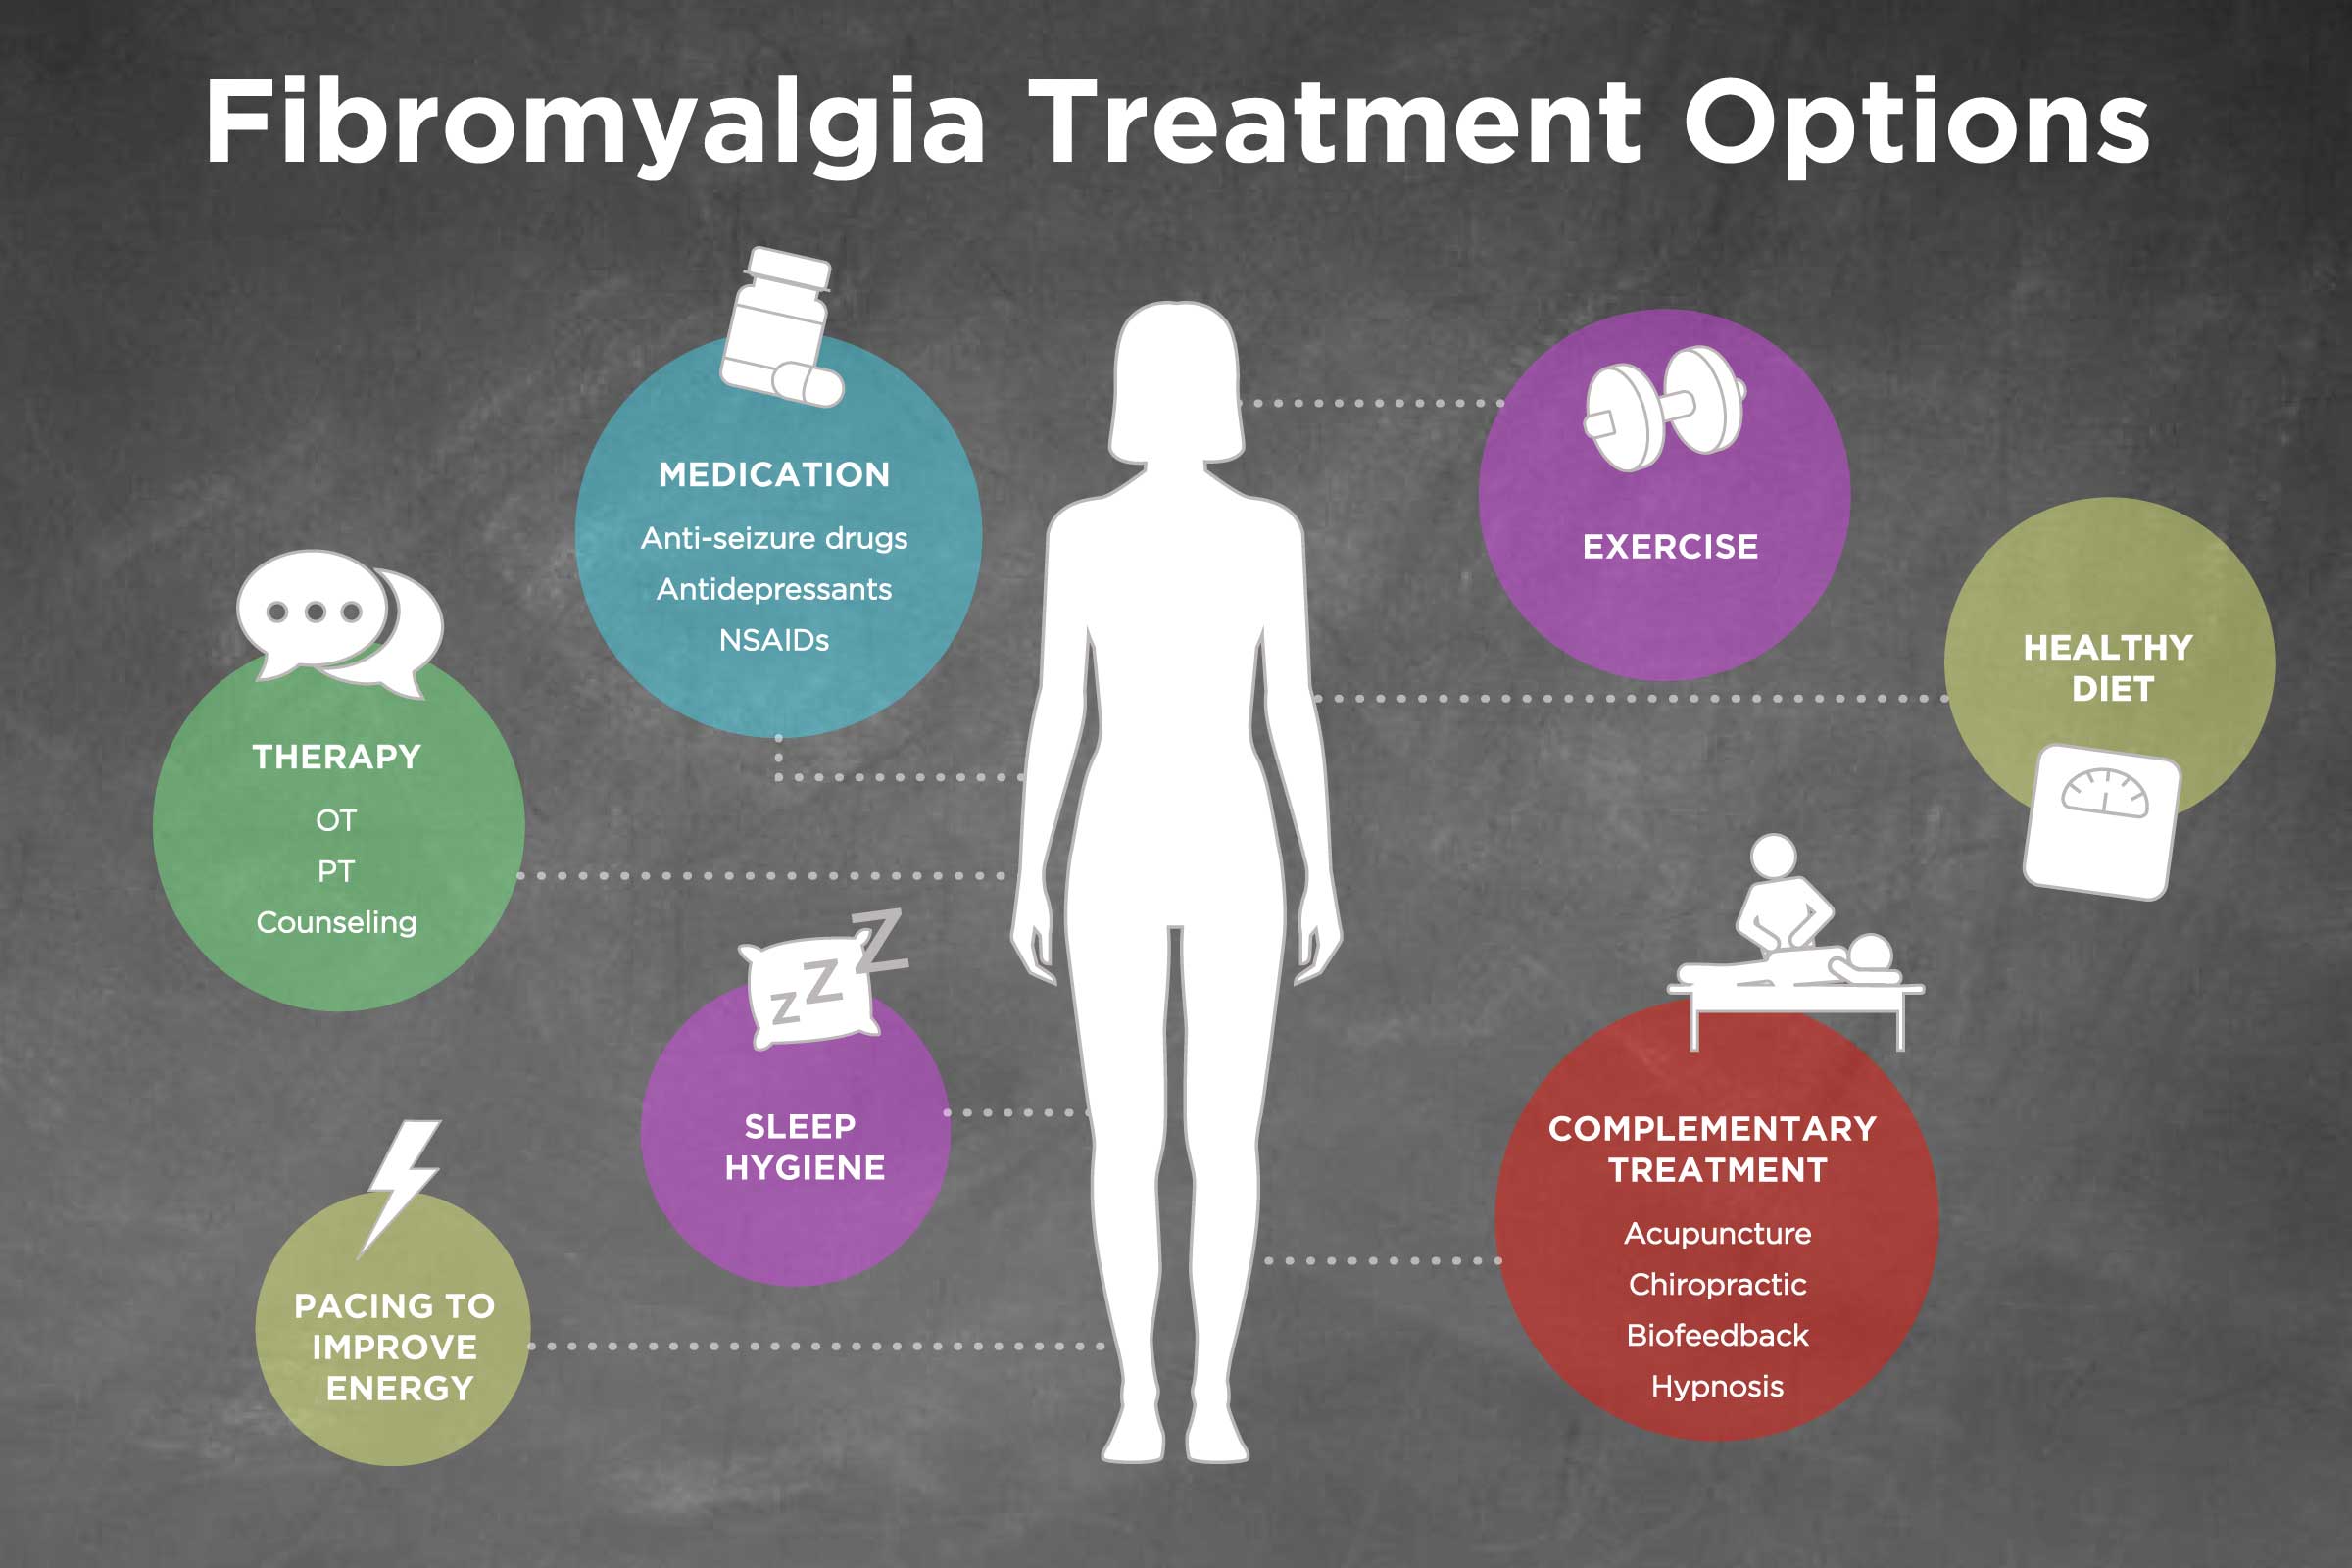 Does Fibromyalgia Cause Back Pain?